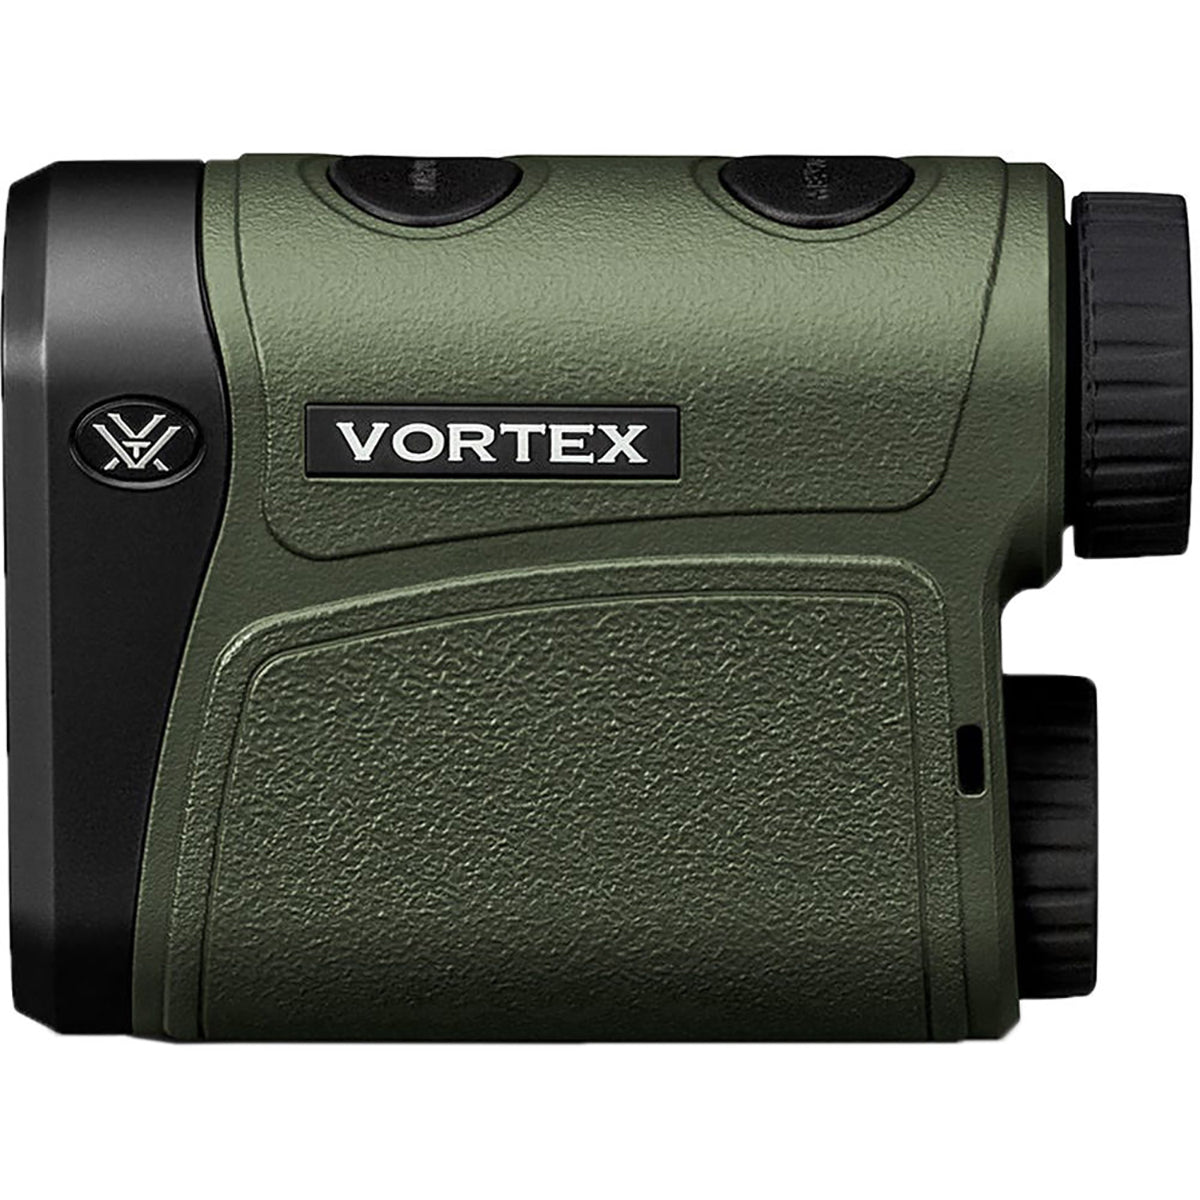 Vortex Optics Impact 1000 Laser Rangefinder Vortex